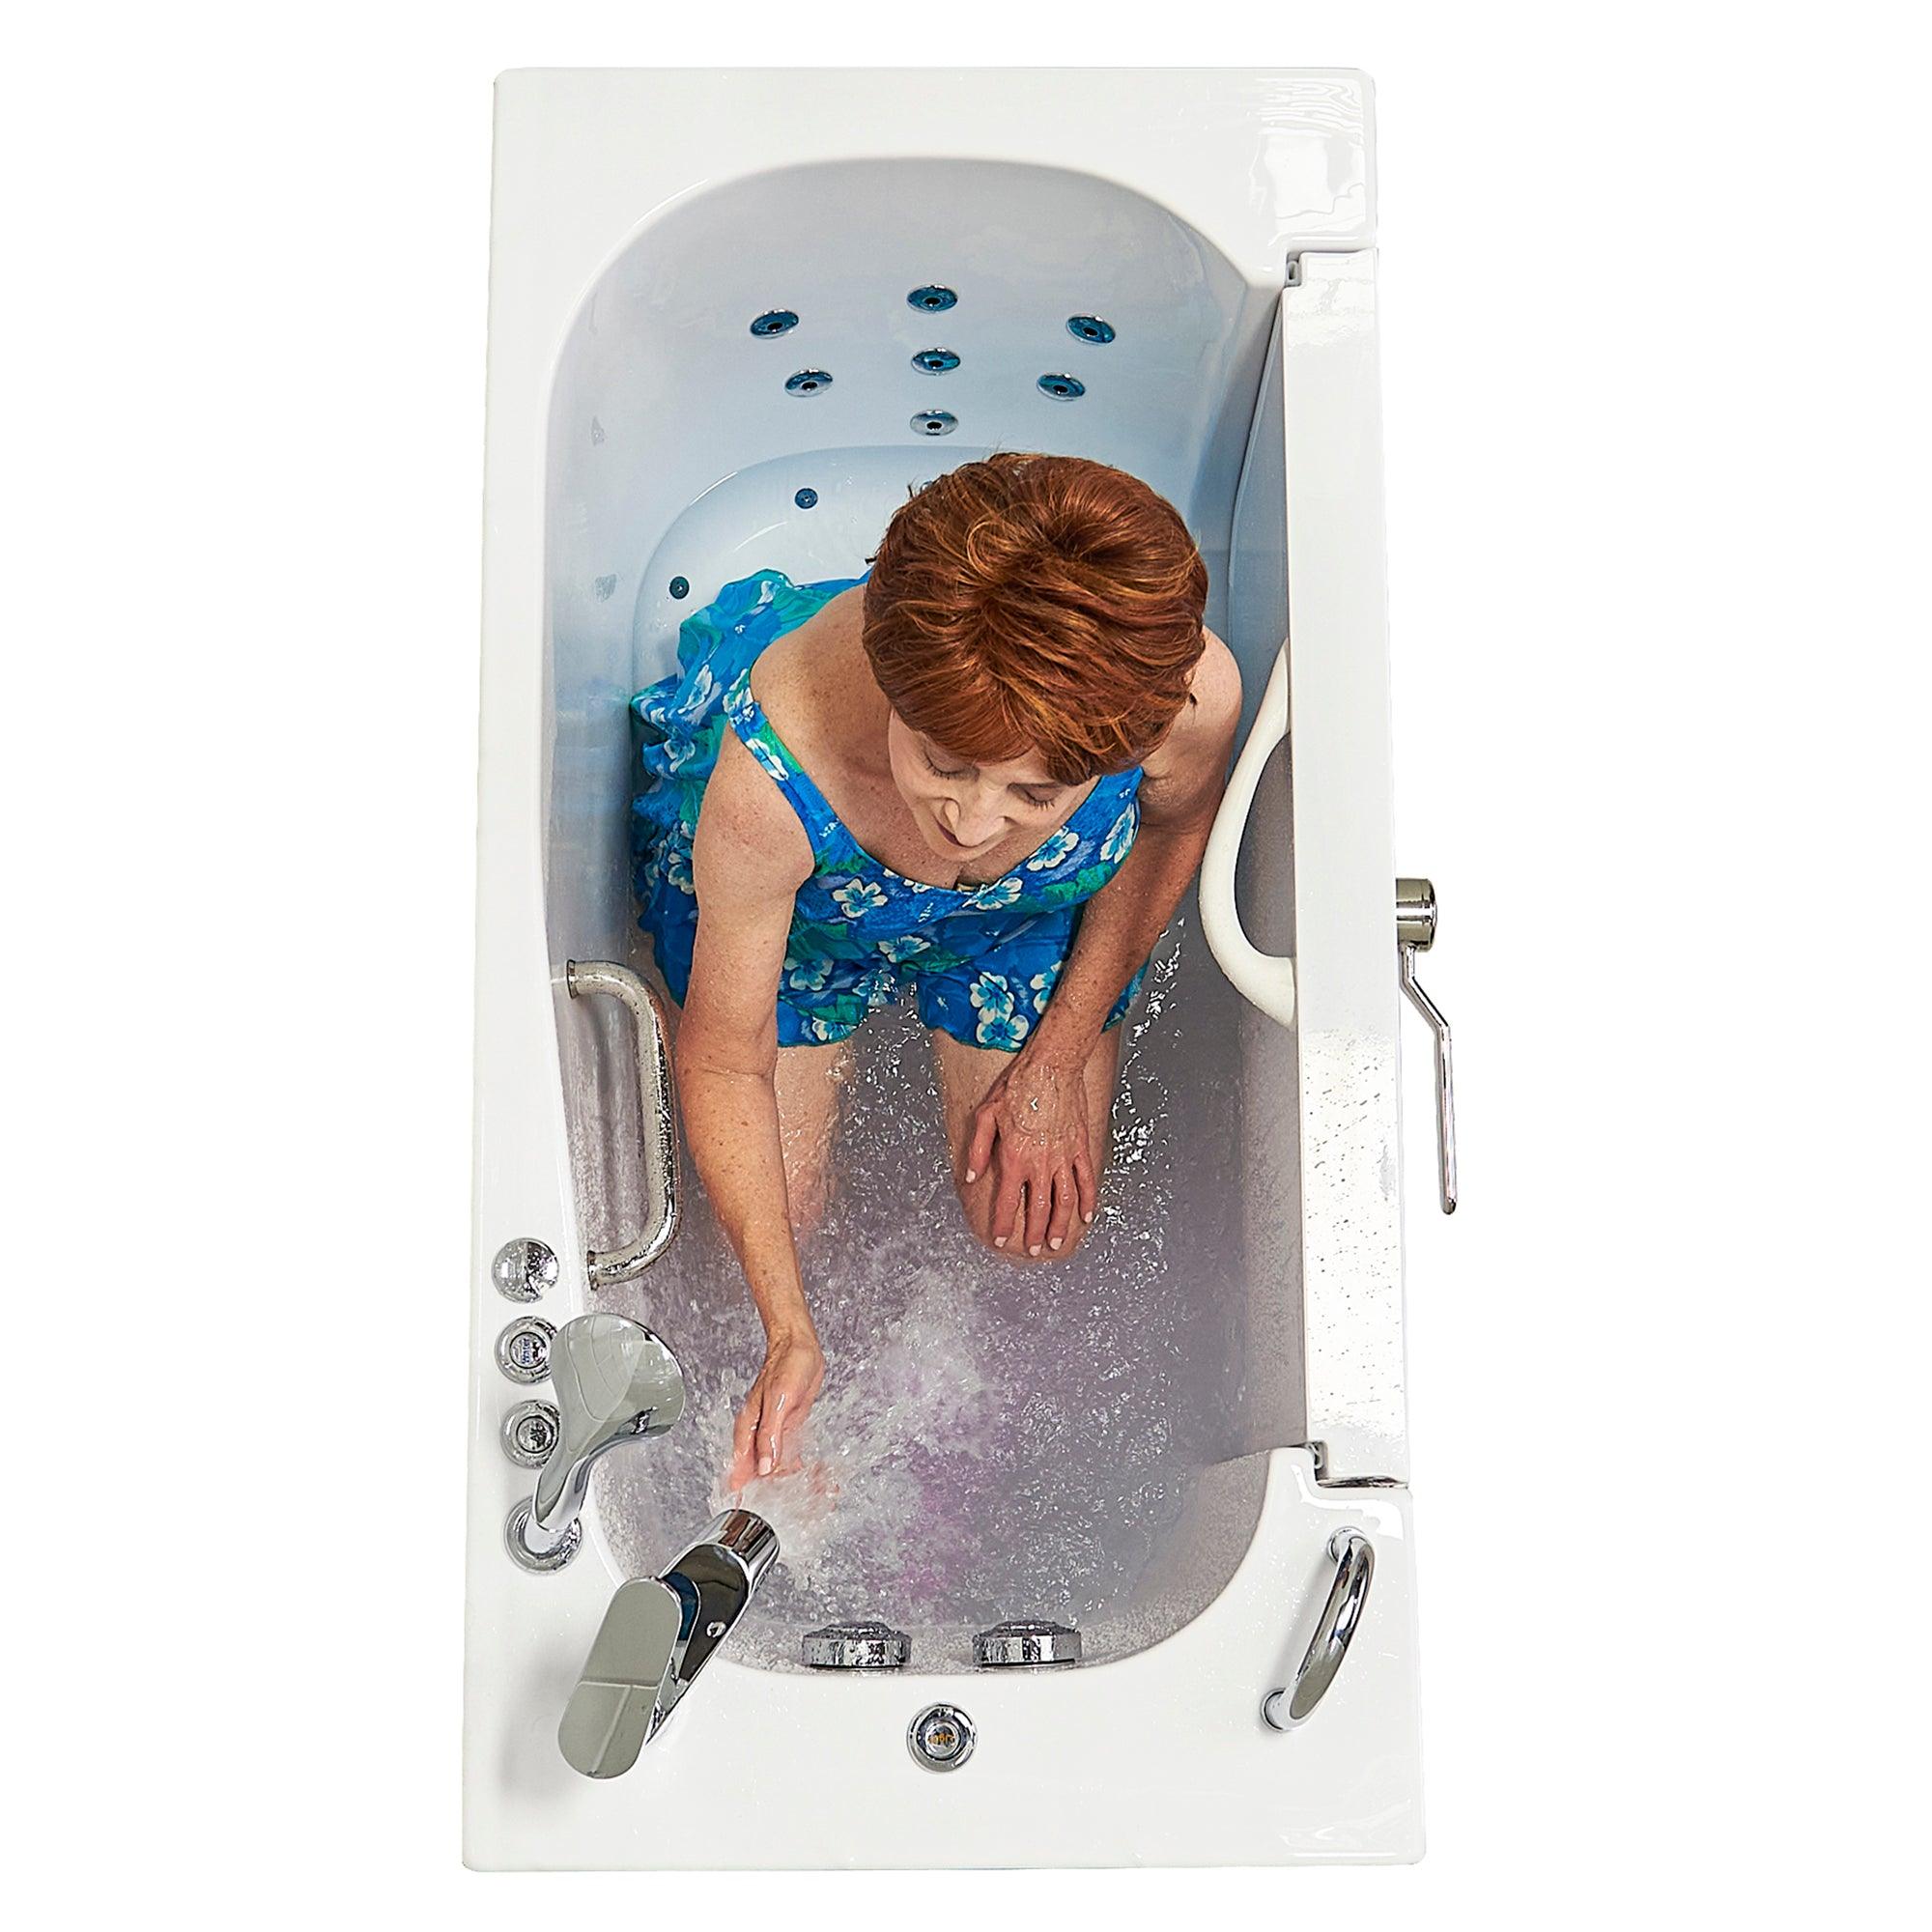 Ella Wheelchair Transfer 26" x 52" Acrylic Air and Hydro Massage Walk-In Bathtub - Bathroom Design Center